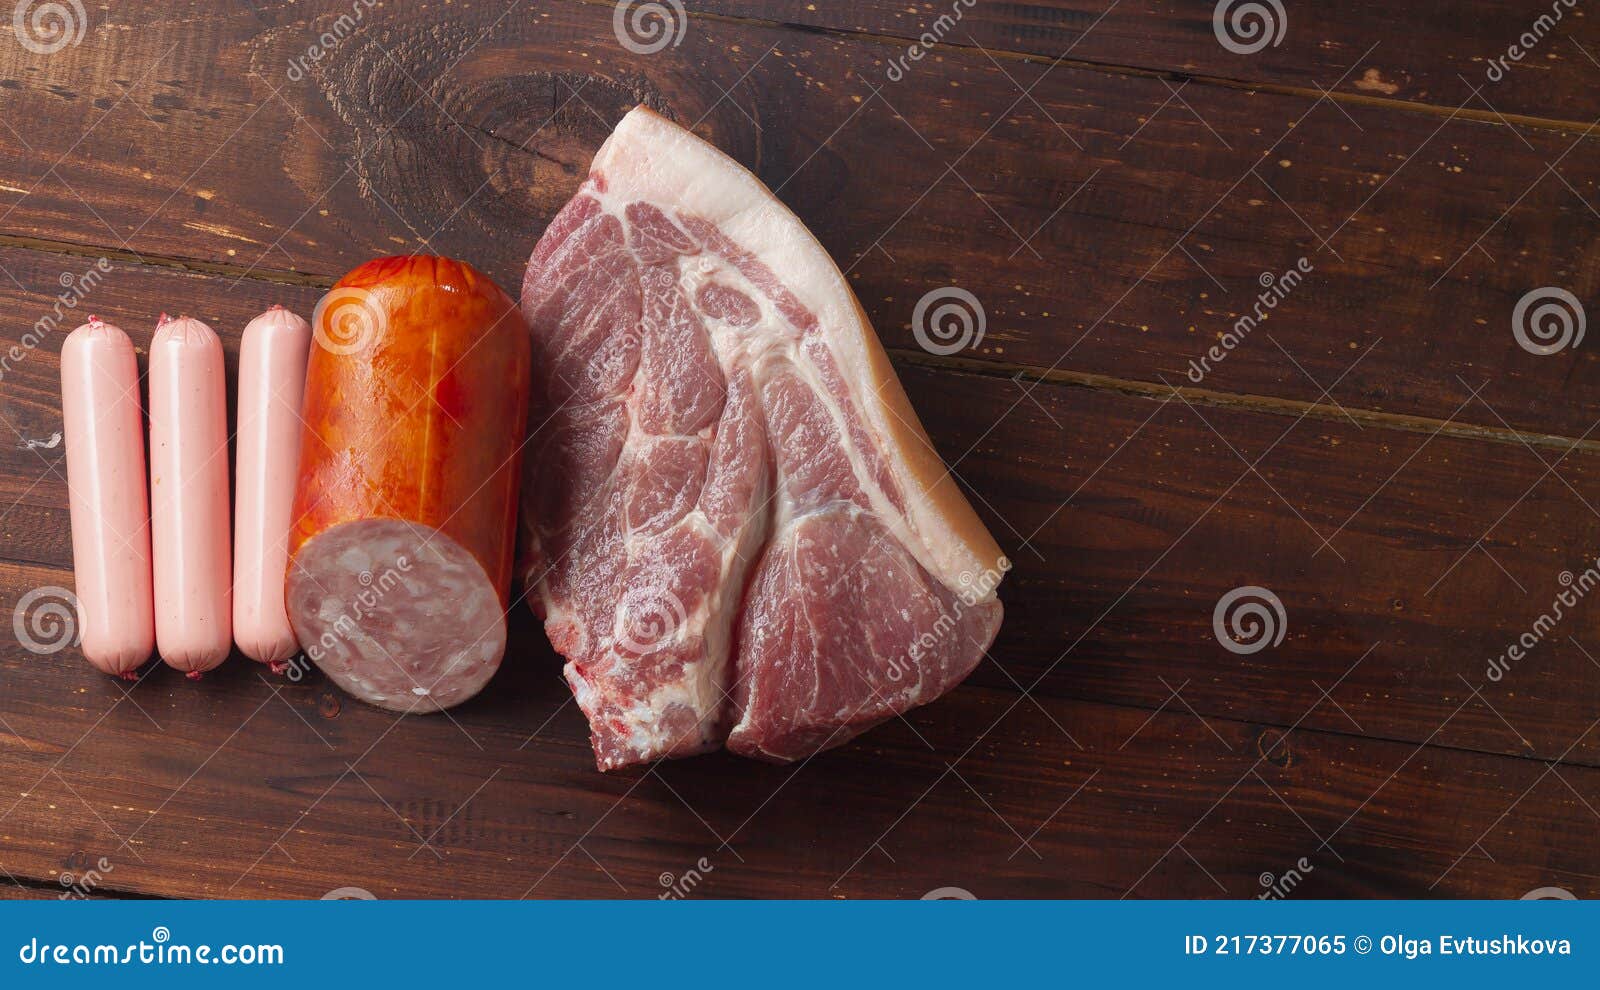 火腿肠真的是用病死的猪肉做的吗？常吃对身体有危害吗？ - 哔哩哔哩